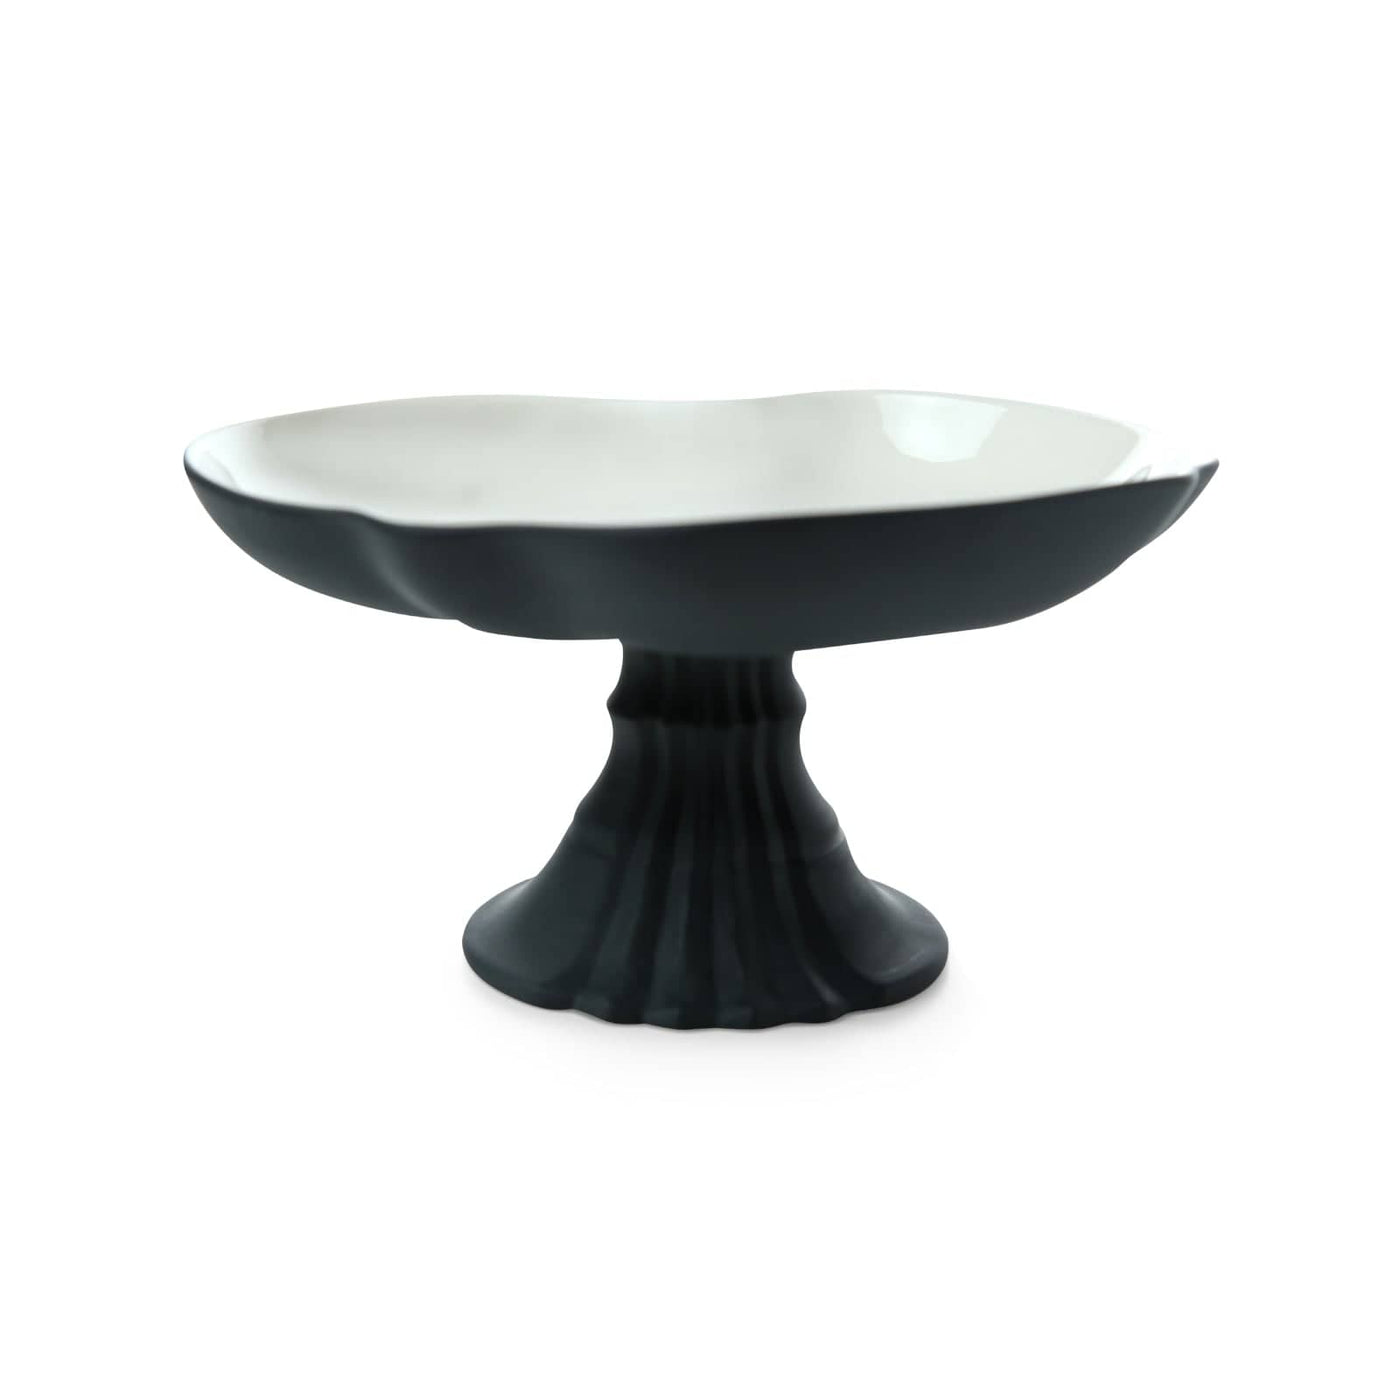 Venus Footed Serving Platter, Anthracite - Black - Ivory Stands & Serving Platters sazy.com